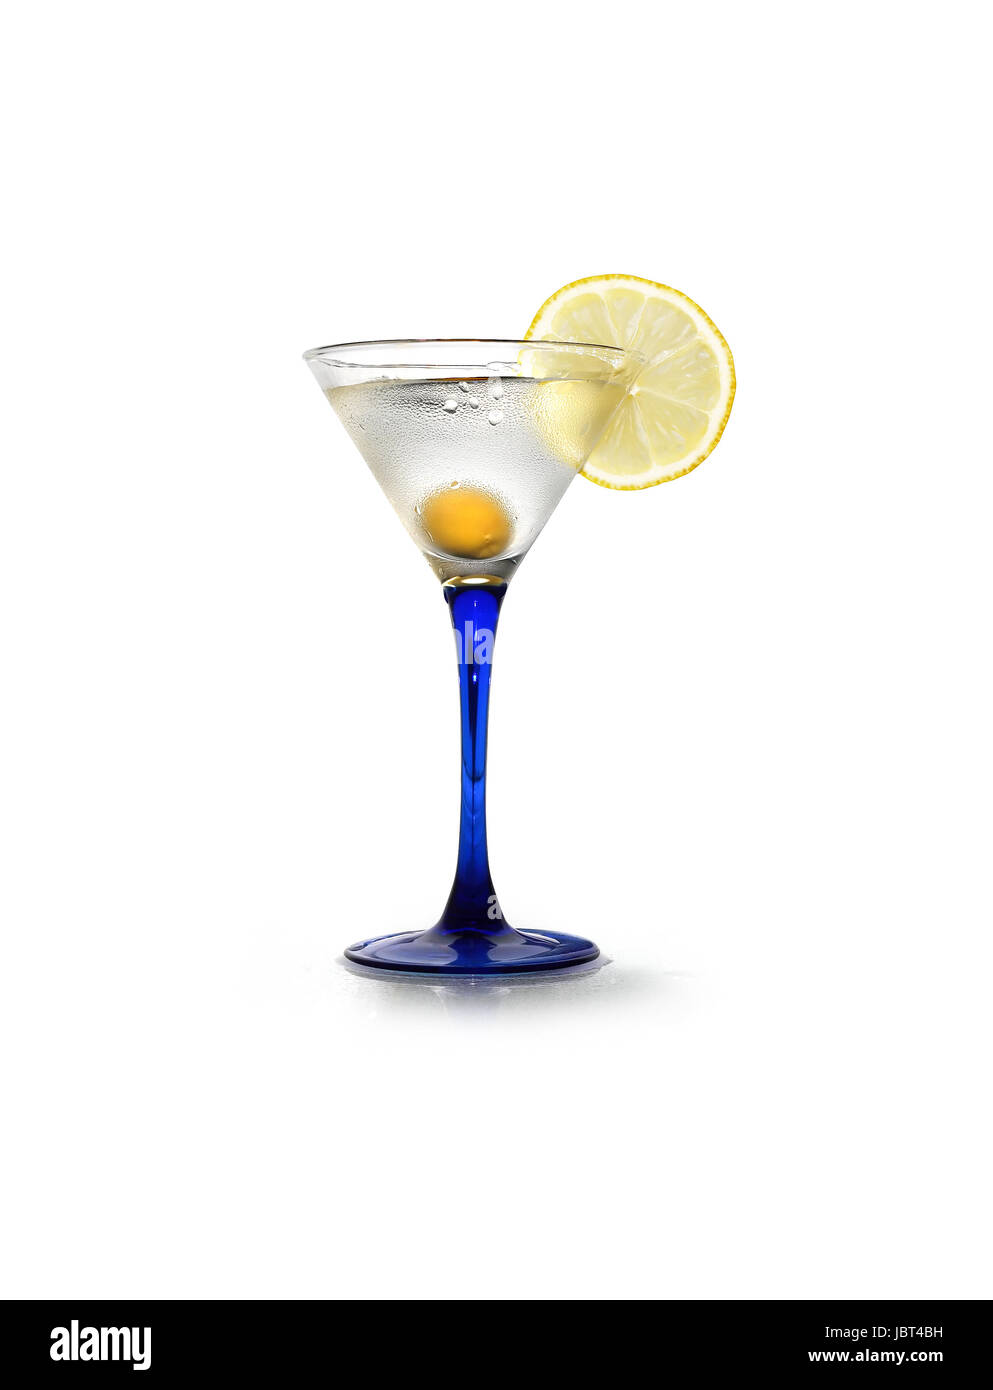 Elegante coppetta Martini con limone e oliva su sfondo bianco. Isolato con tracciato di ritaglio Foto Stock